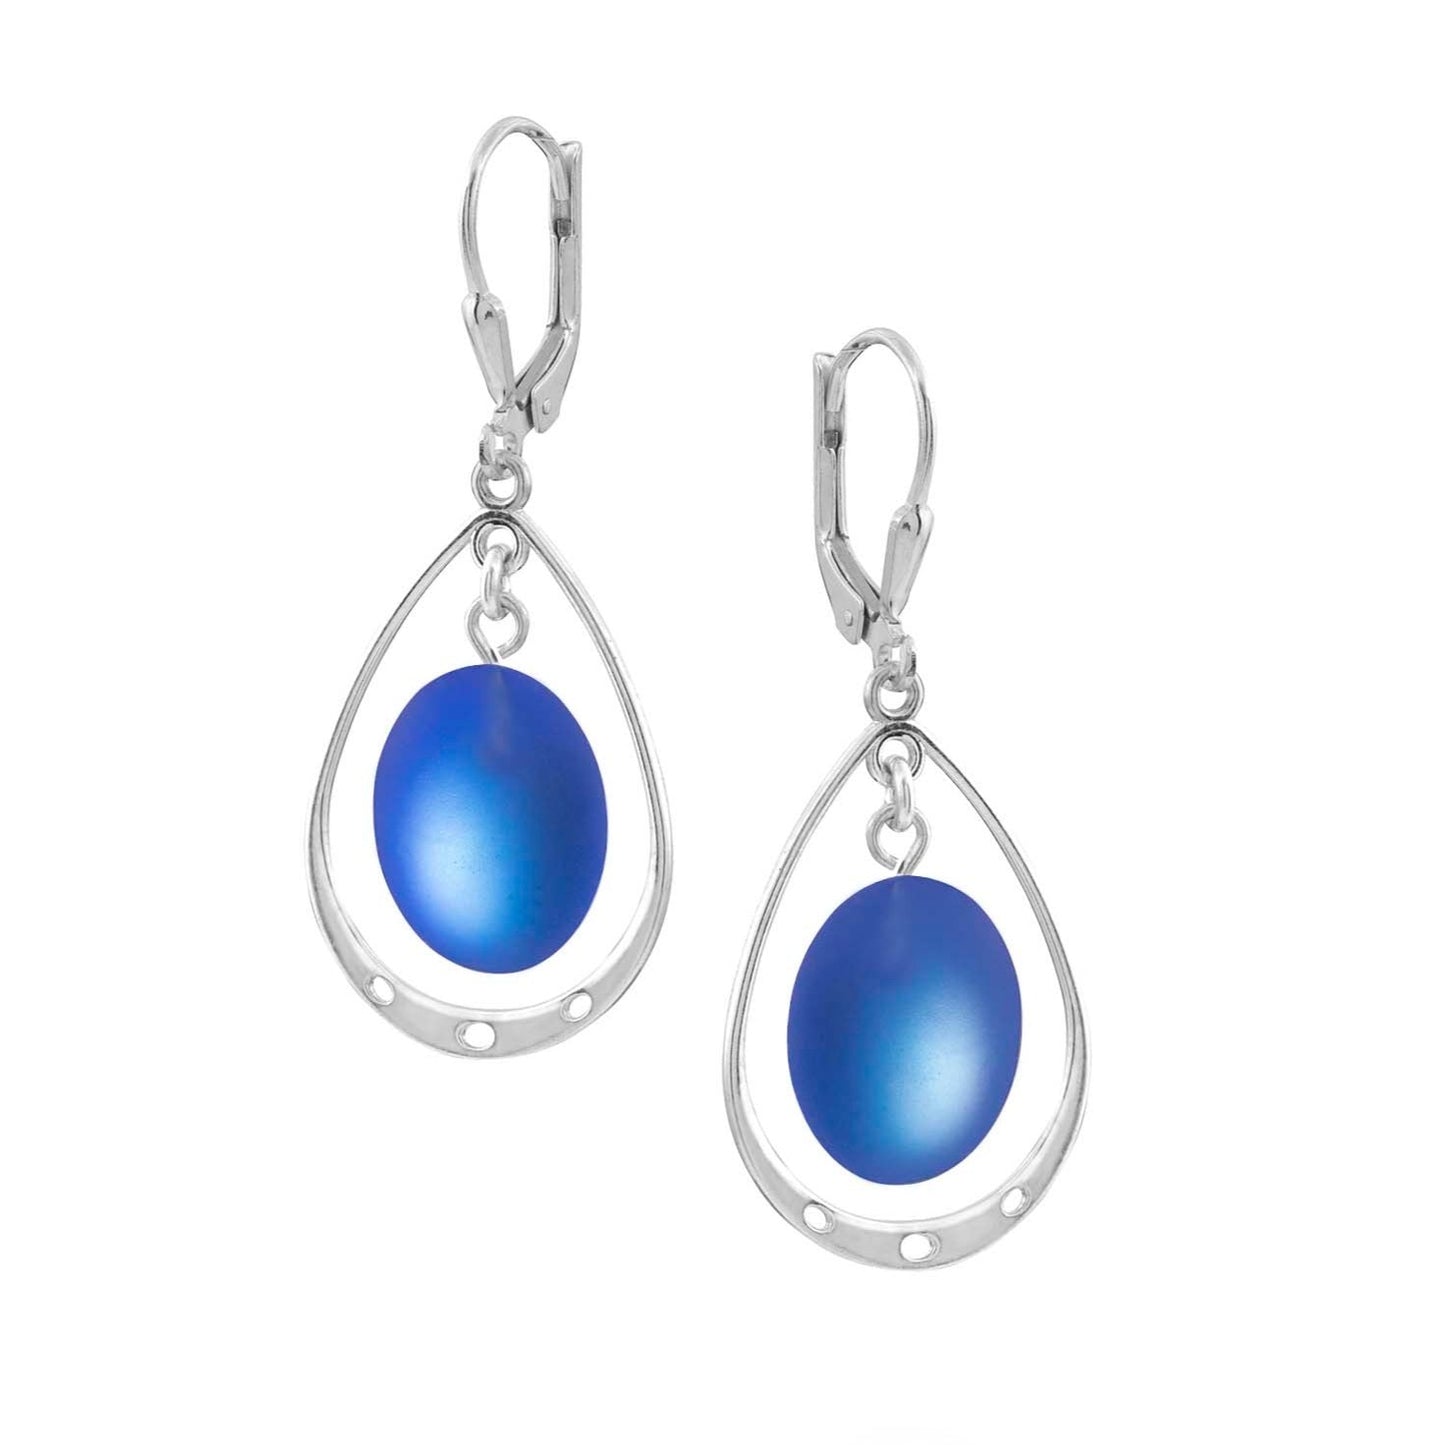 Oval Crystal Earrings with Sterling Silver Loop - Blue